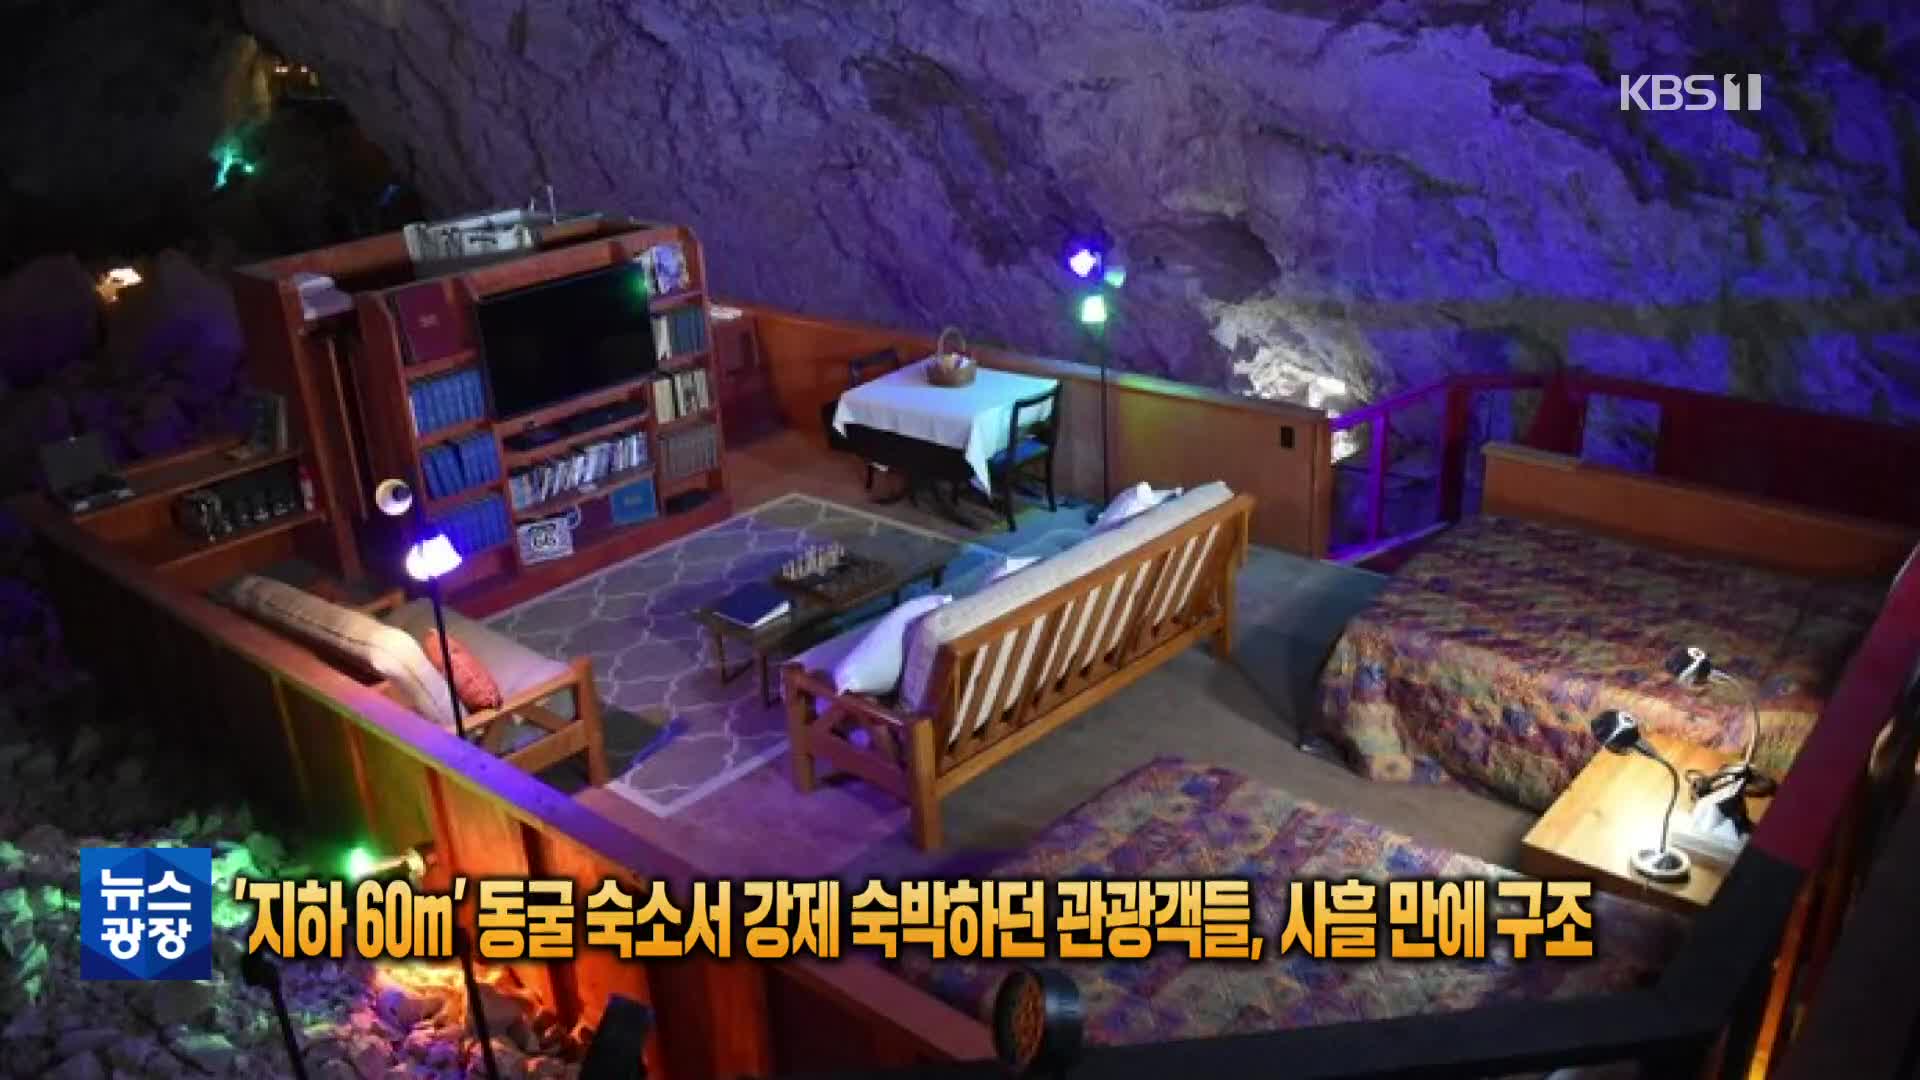 [톡톡 지구촌] ‘지하 60m’ 동굴 숙소서 강제 숙박하던 관광객들, 사흘 만에 구조